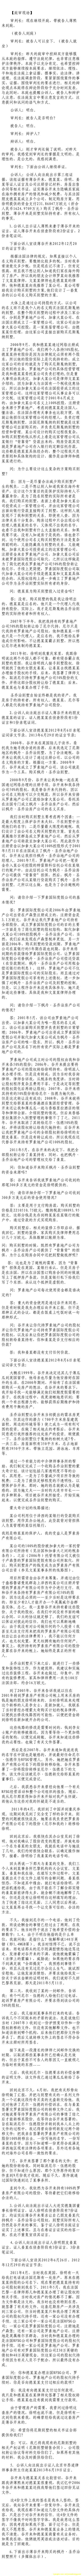 济南市中级法院官方微博公布的8月23日庭审现场记录（1）